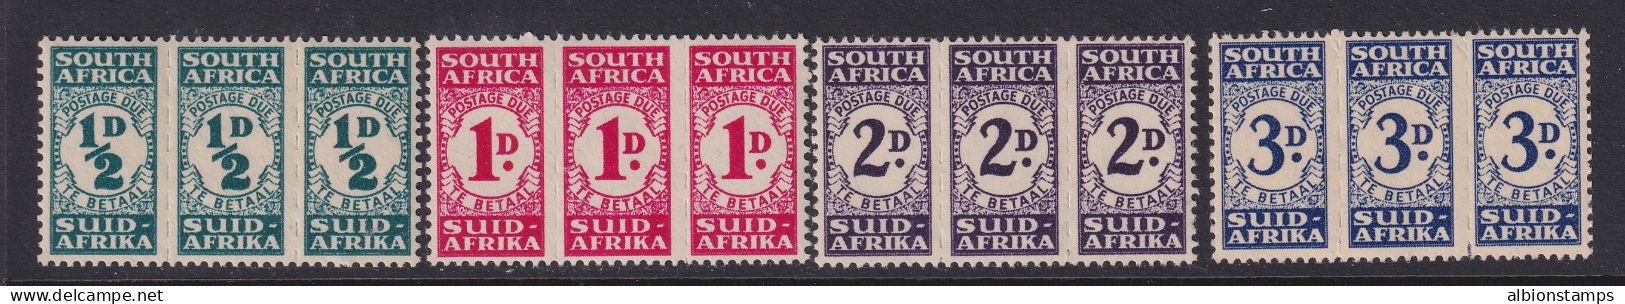 South Africa, Scott J30-J33 (SG D30-D33), MNH - Impuestos